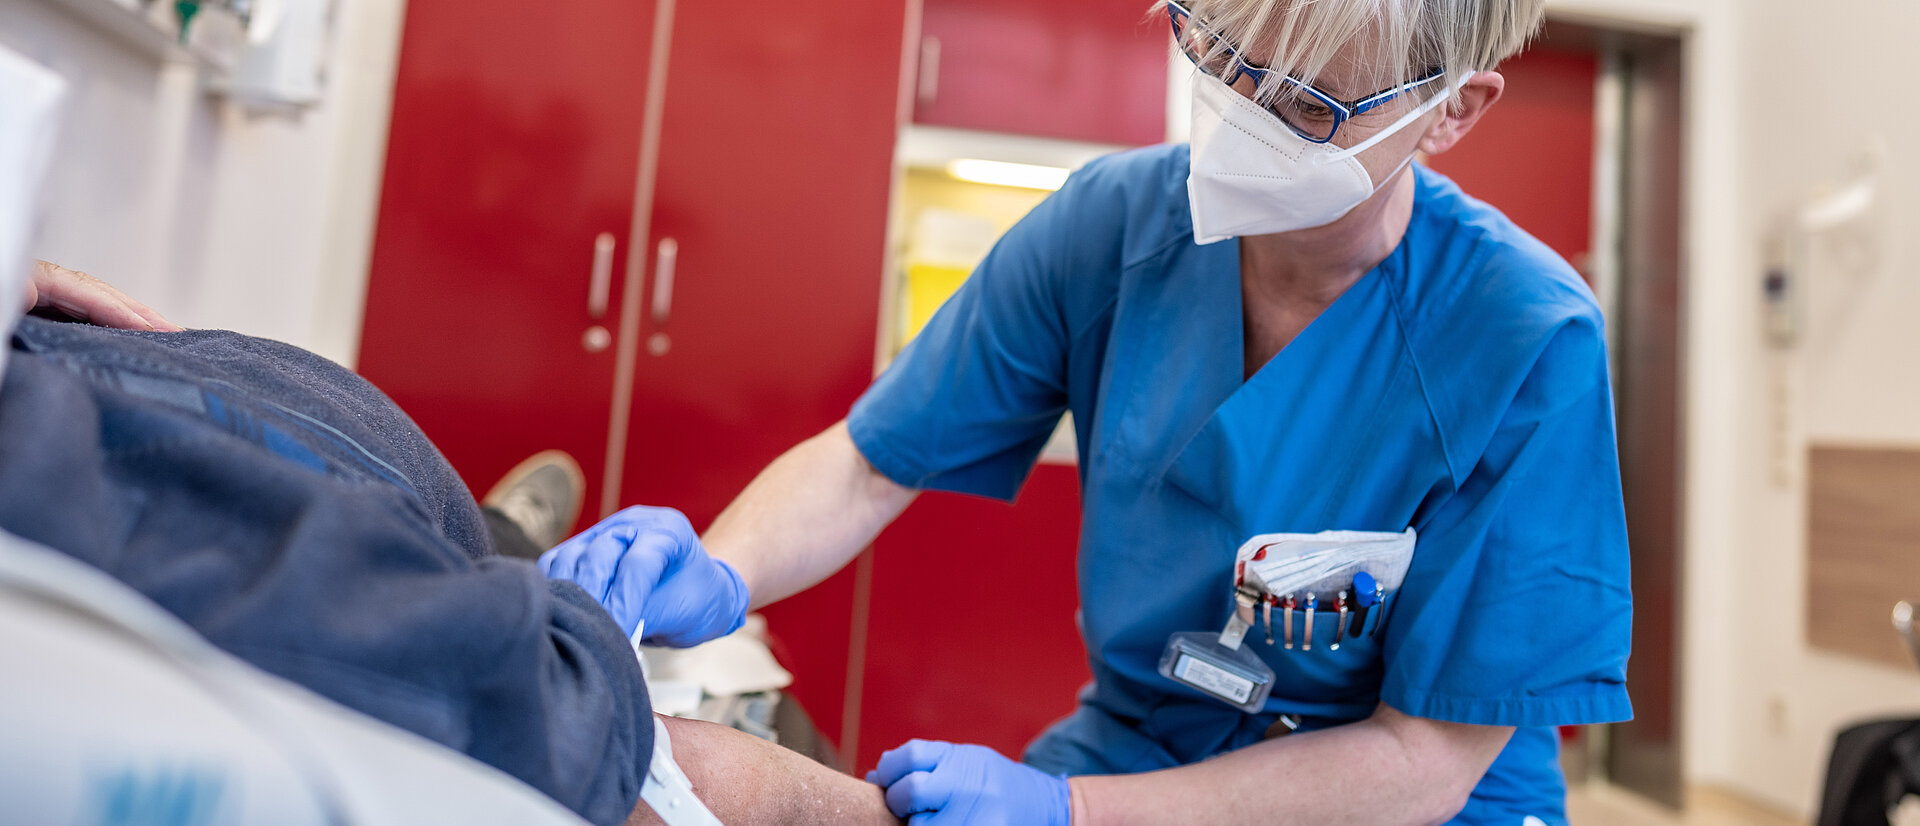 Pflegekraft der Zentralen Notaufnahme kniet neben Patienten und nimmt Blut ab. Dill-Kliniken, Dillenburg.